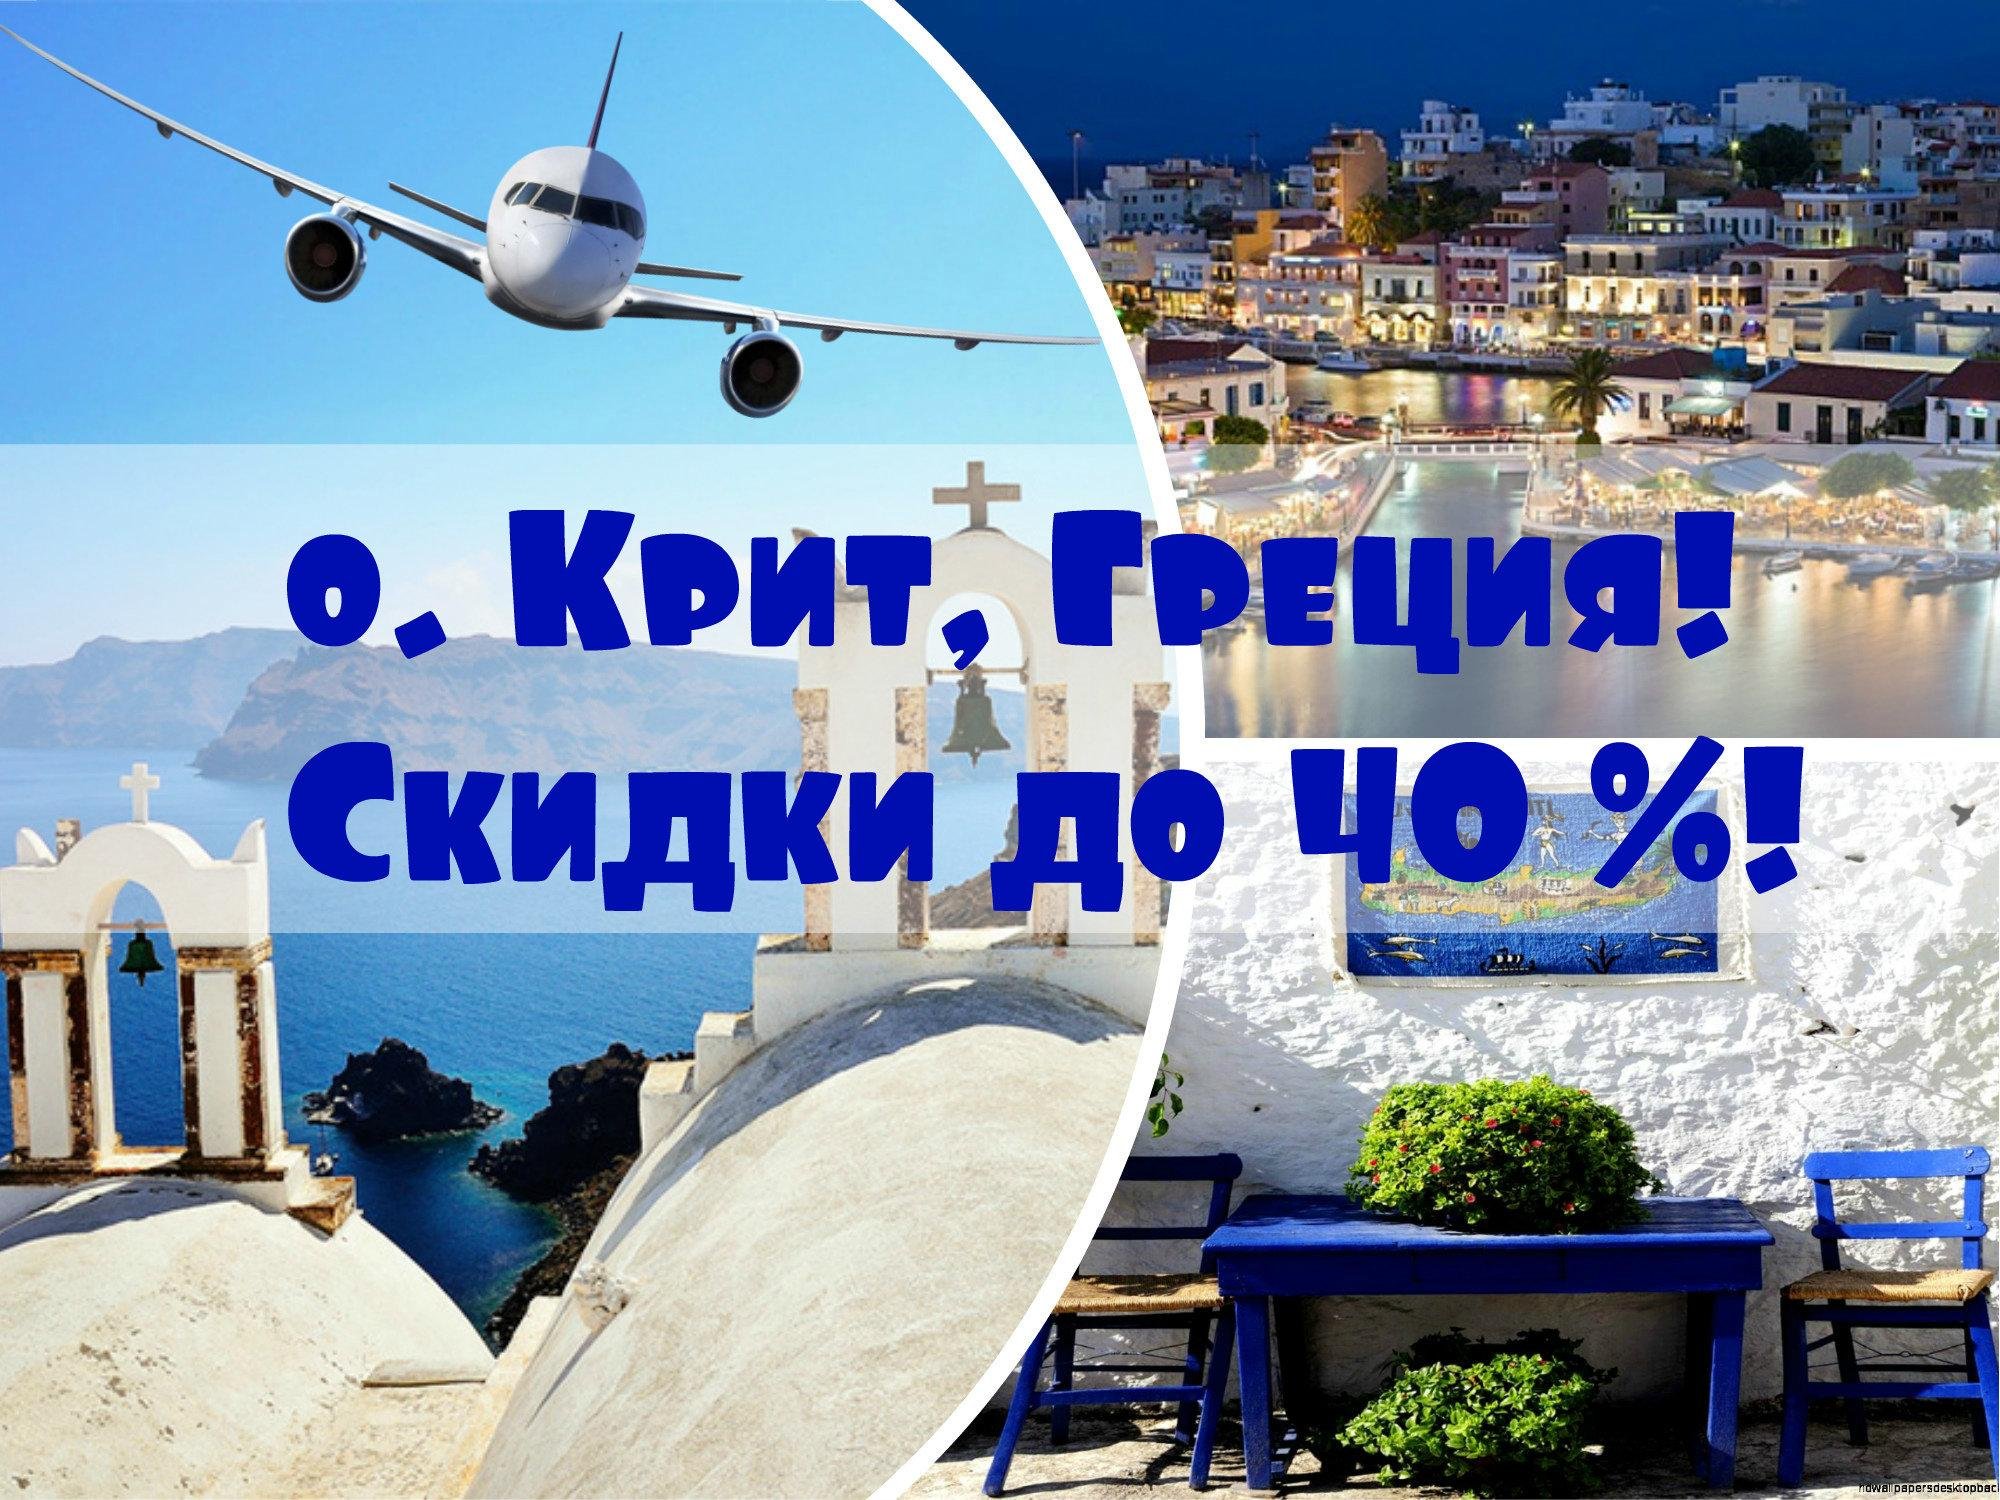 Греческая реклама. Реклама путешествия в Грецию. Греция раннее бронирование. Греция турагентство. Туристическая реклама Греция.